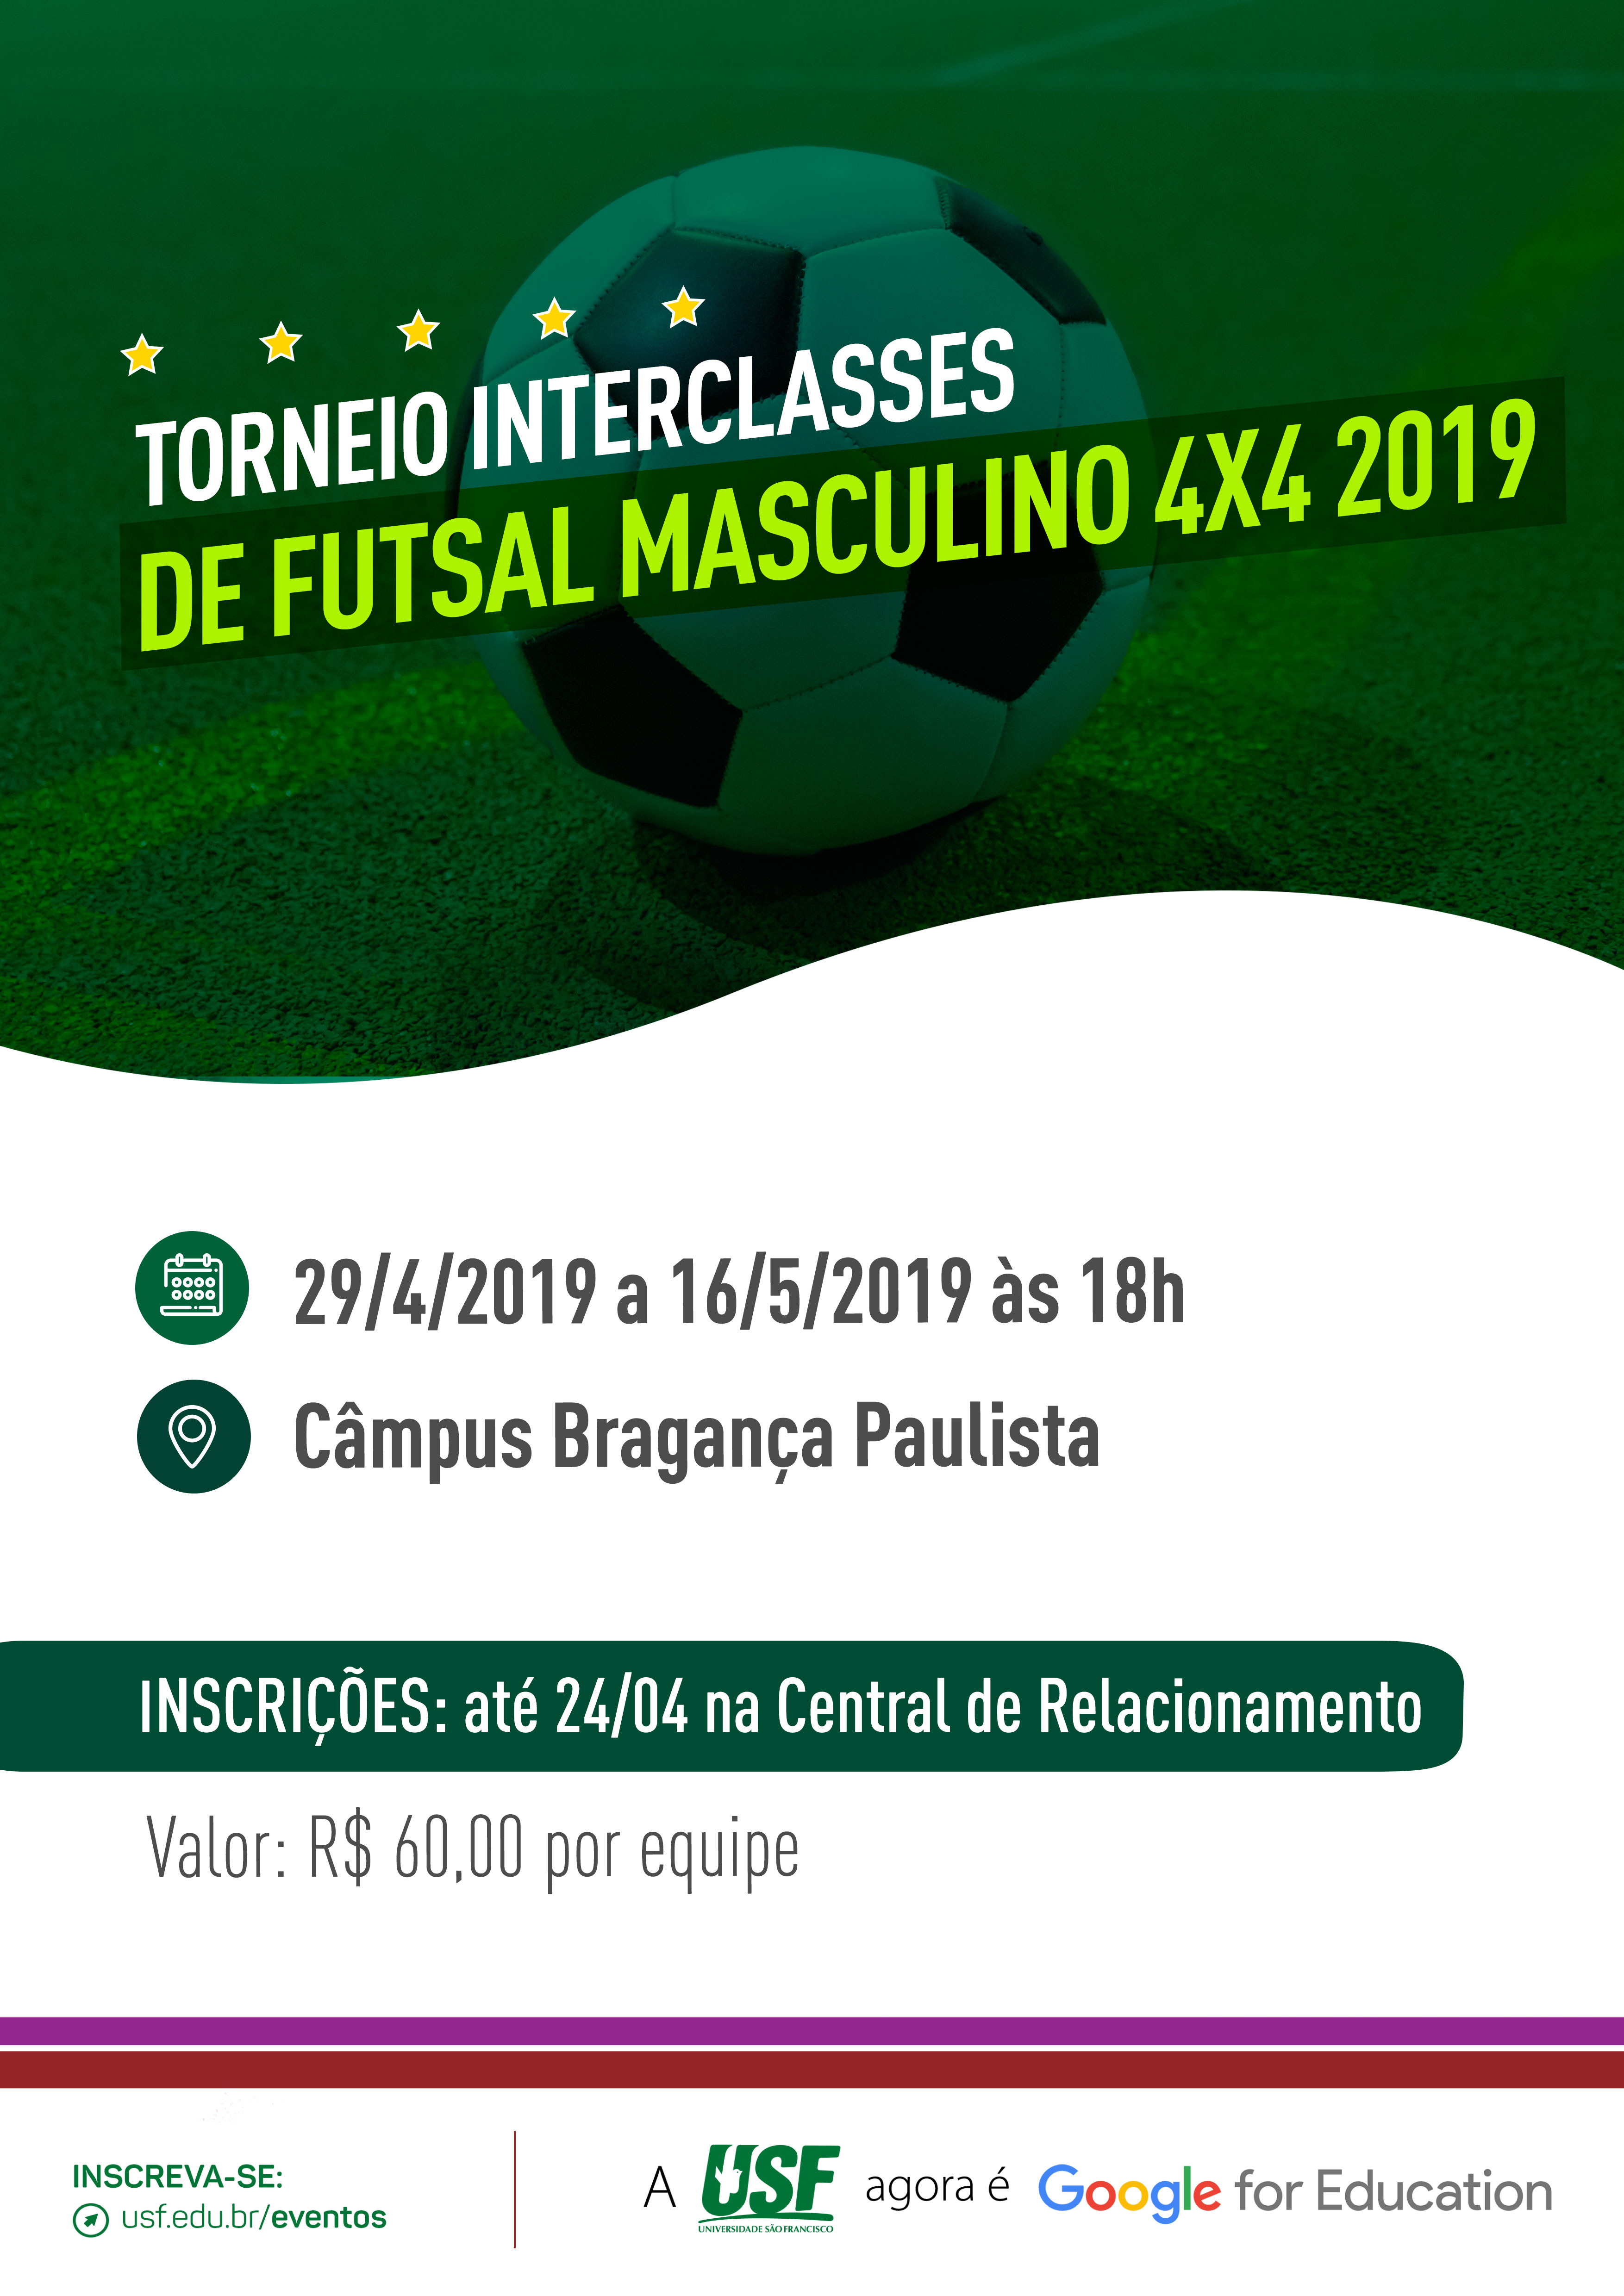 Torneio Interclasses de Futsal Masculino 4x4 2019